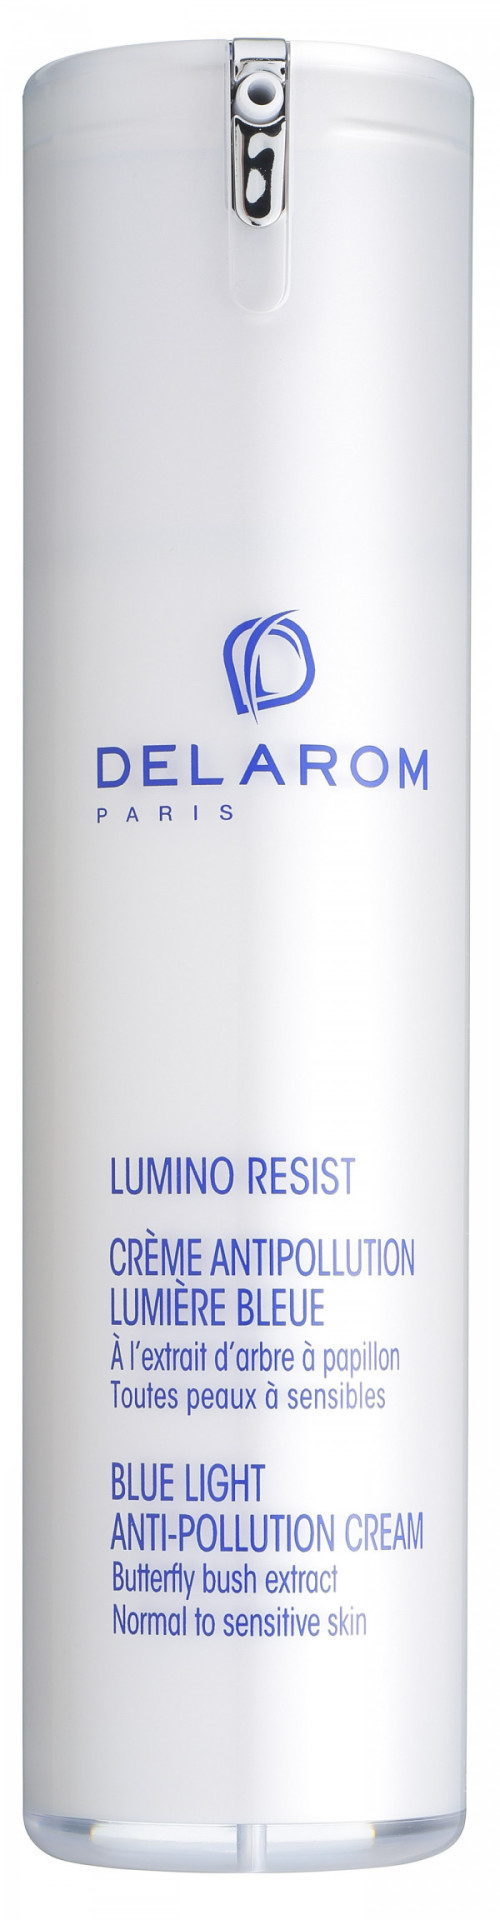 942941345 - Delarom Lumino Resist Crema Antipollution 50ml - 4725662_1.jpg